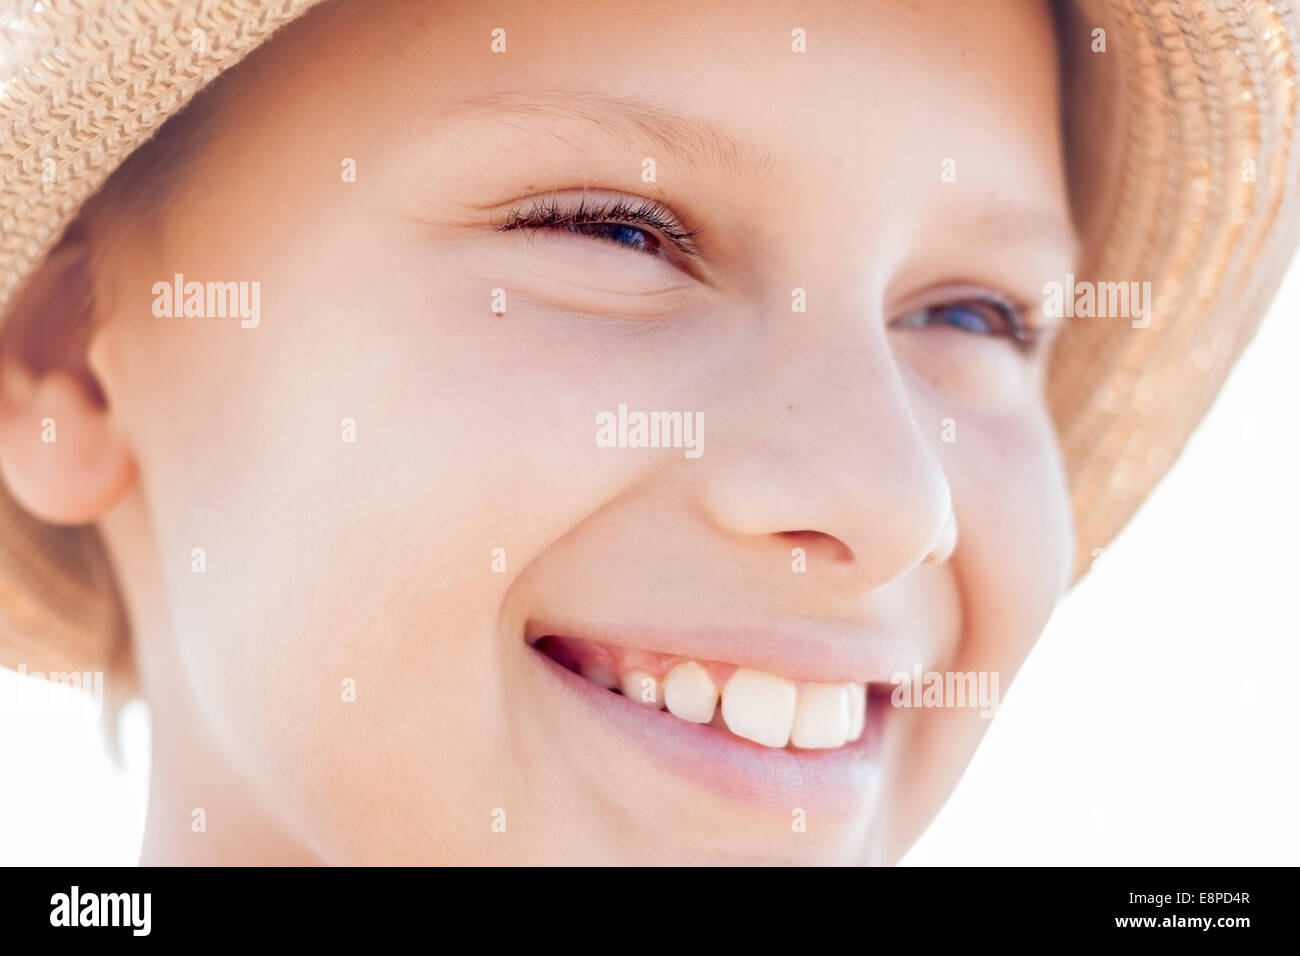 Carino kid sorriso faccia cappello di paglia Foto Stock